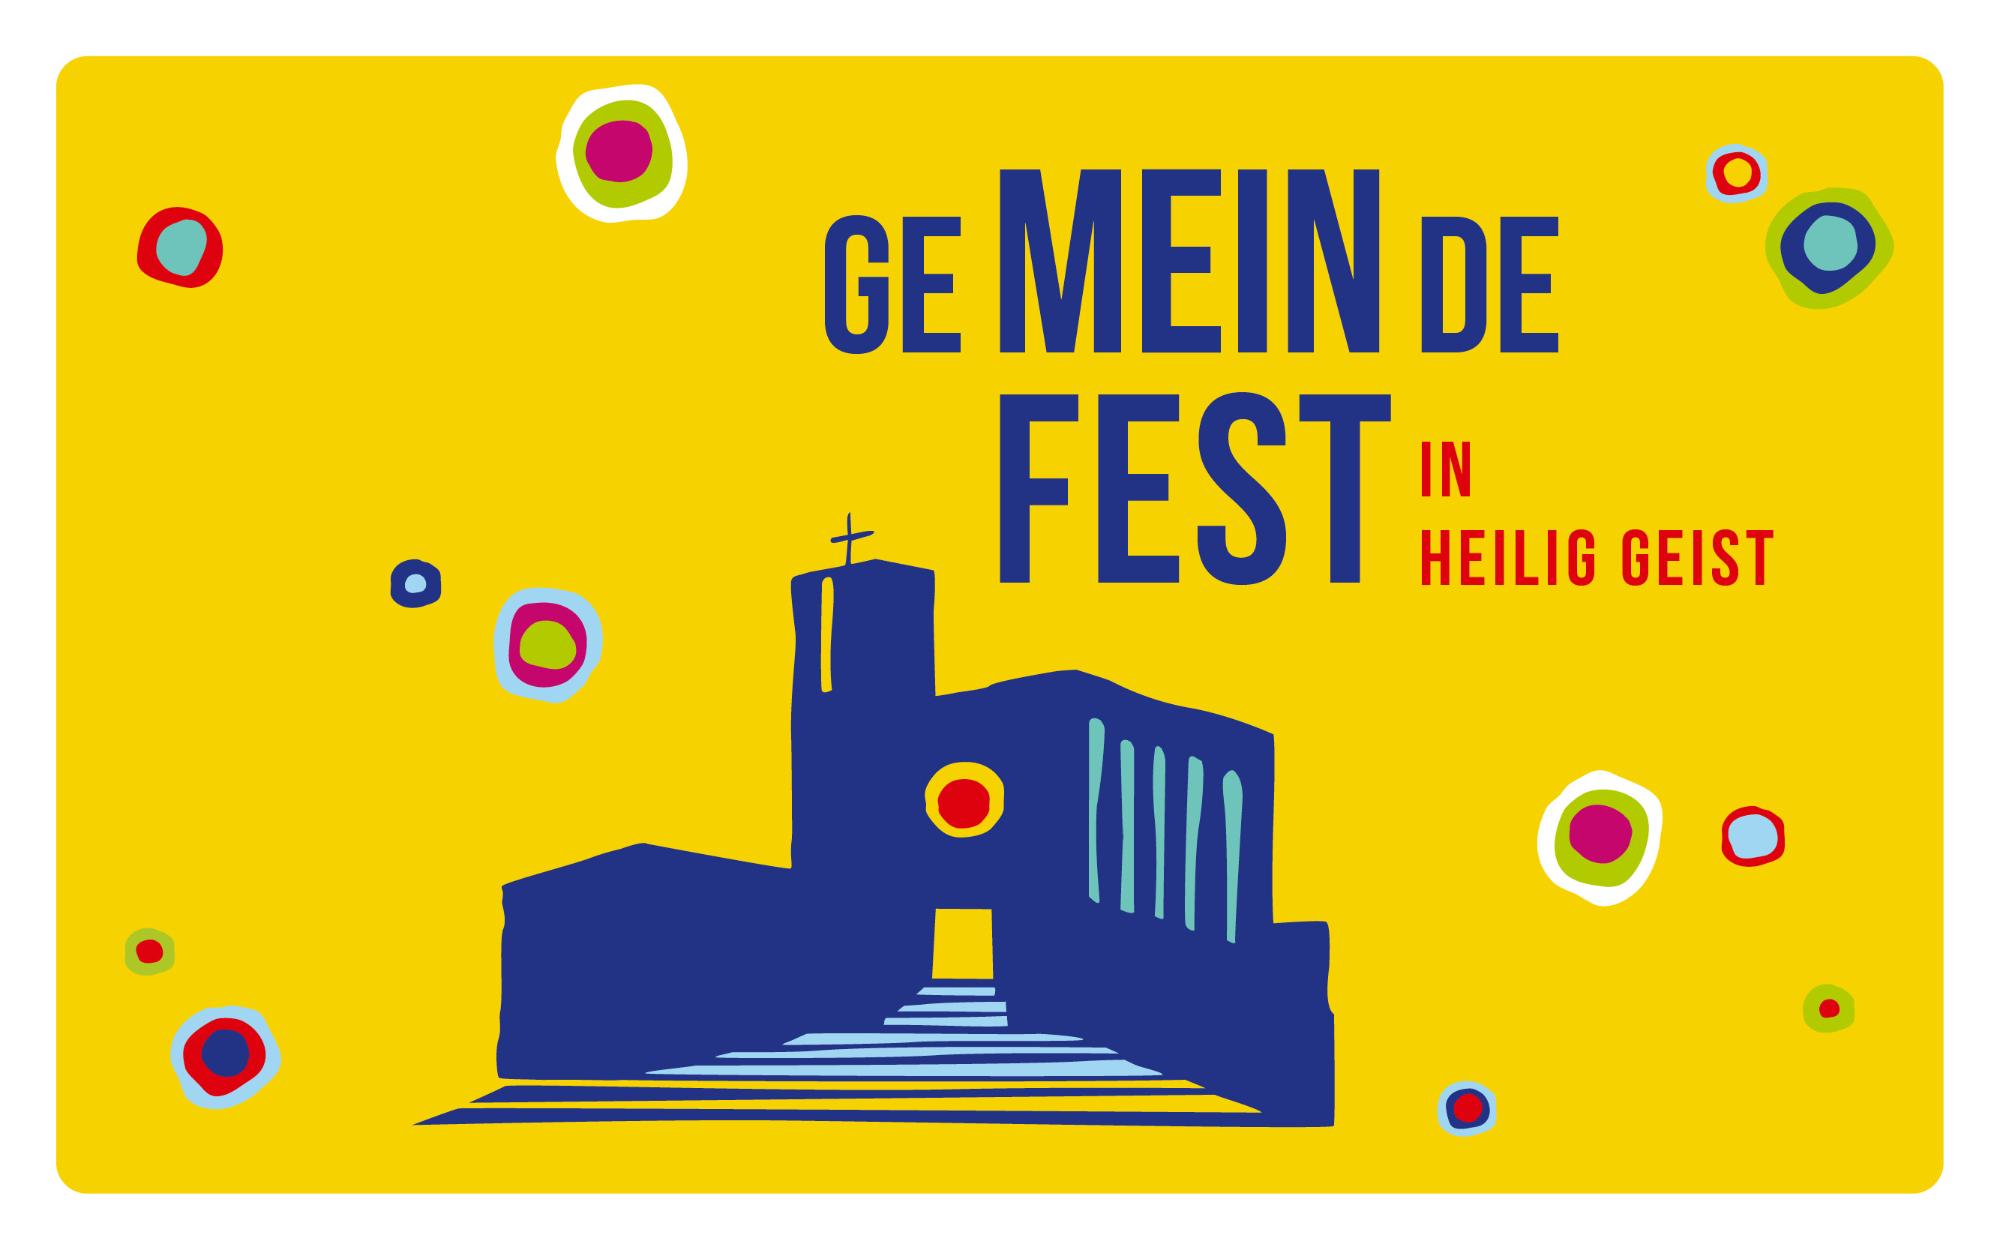 Gemeindefest (c) Hl. Geist